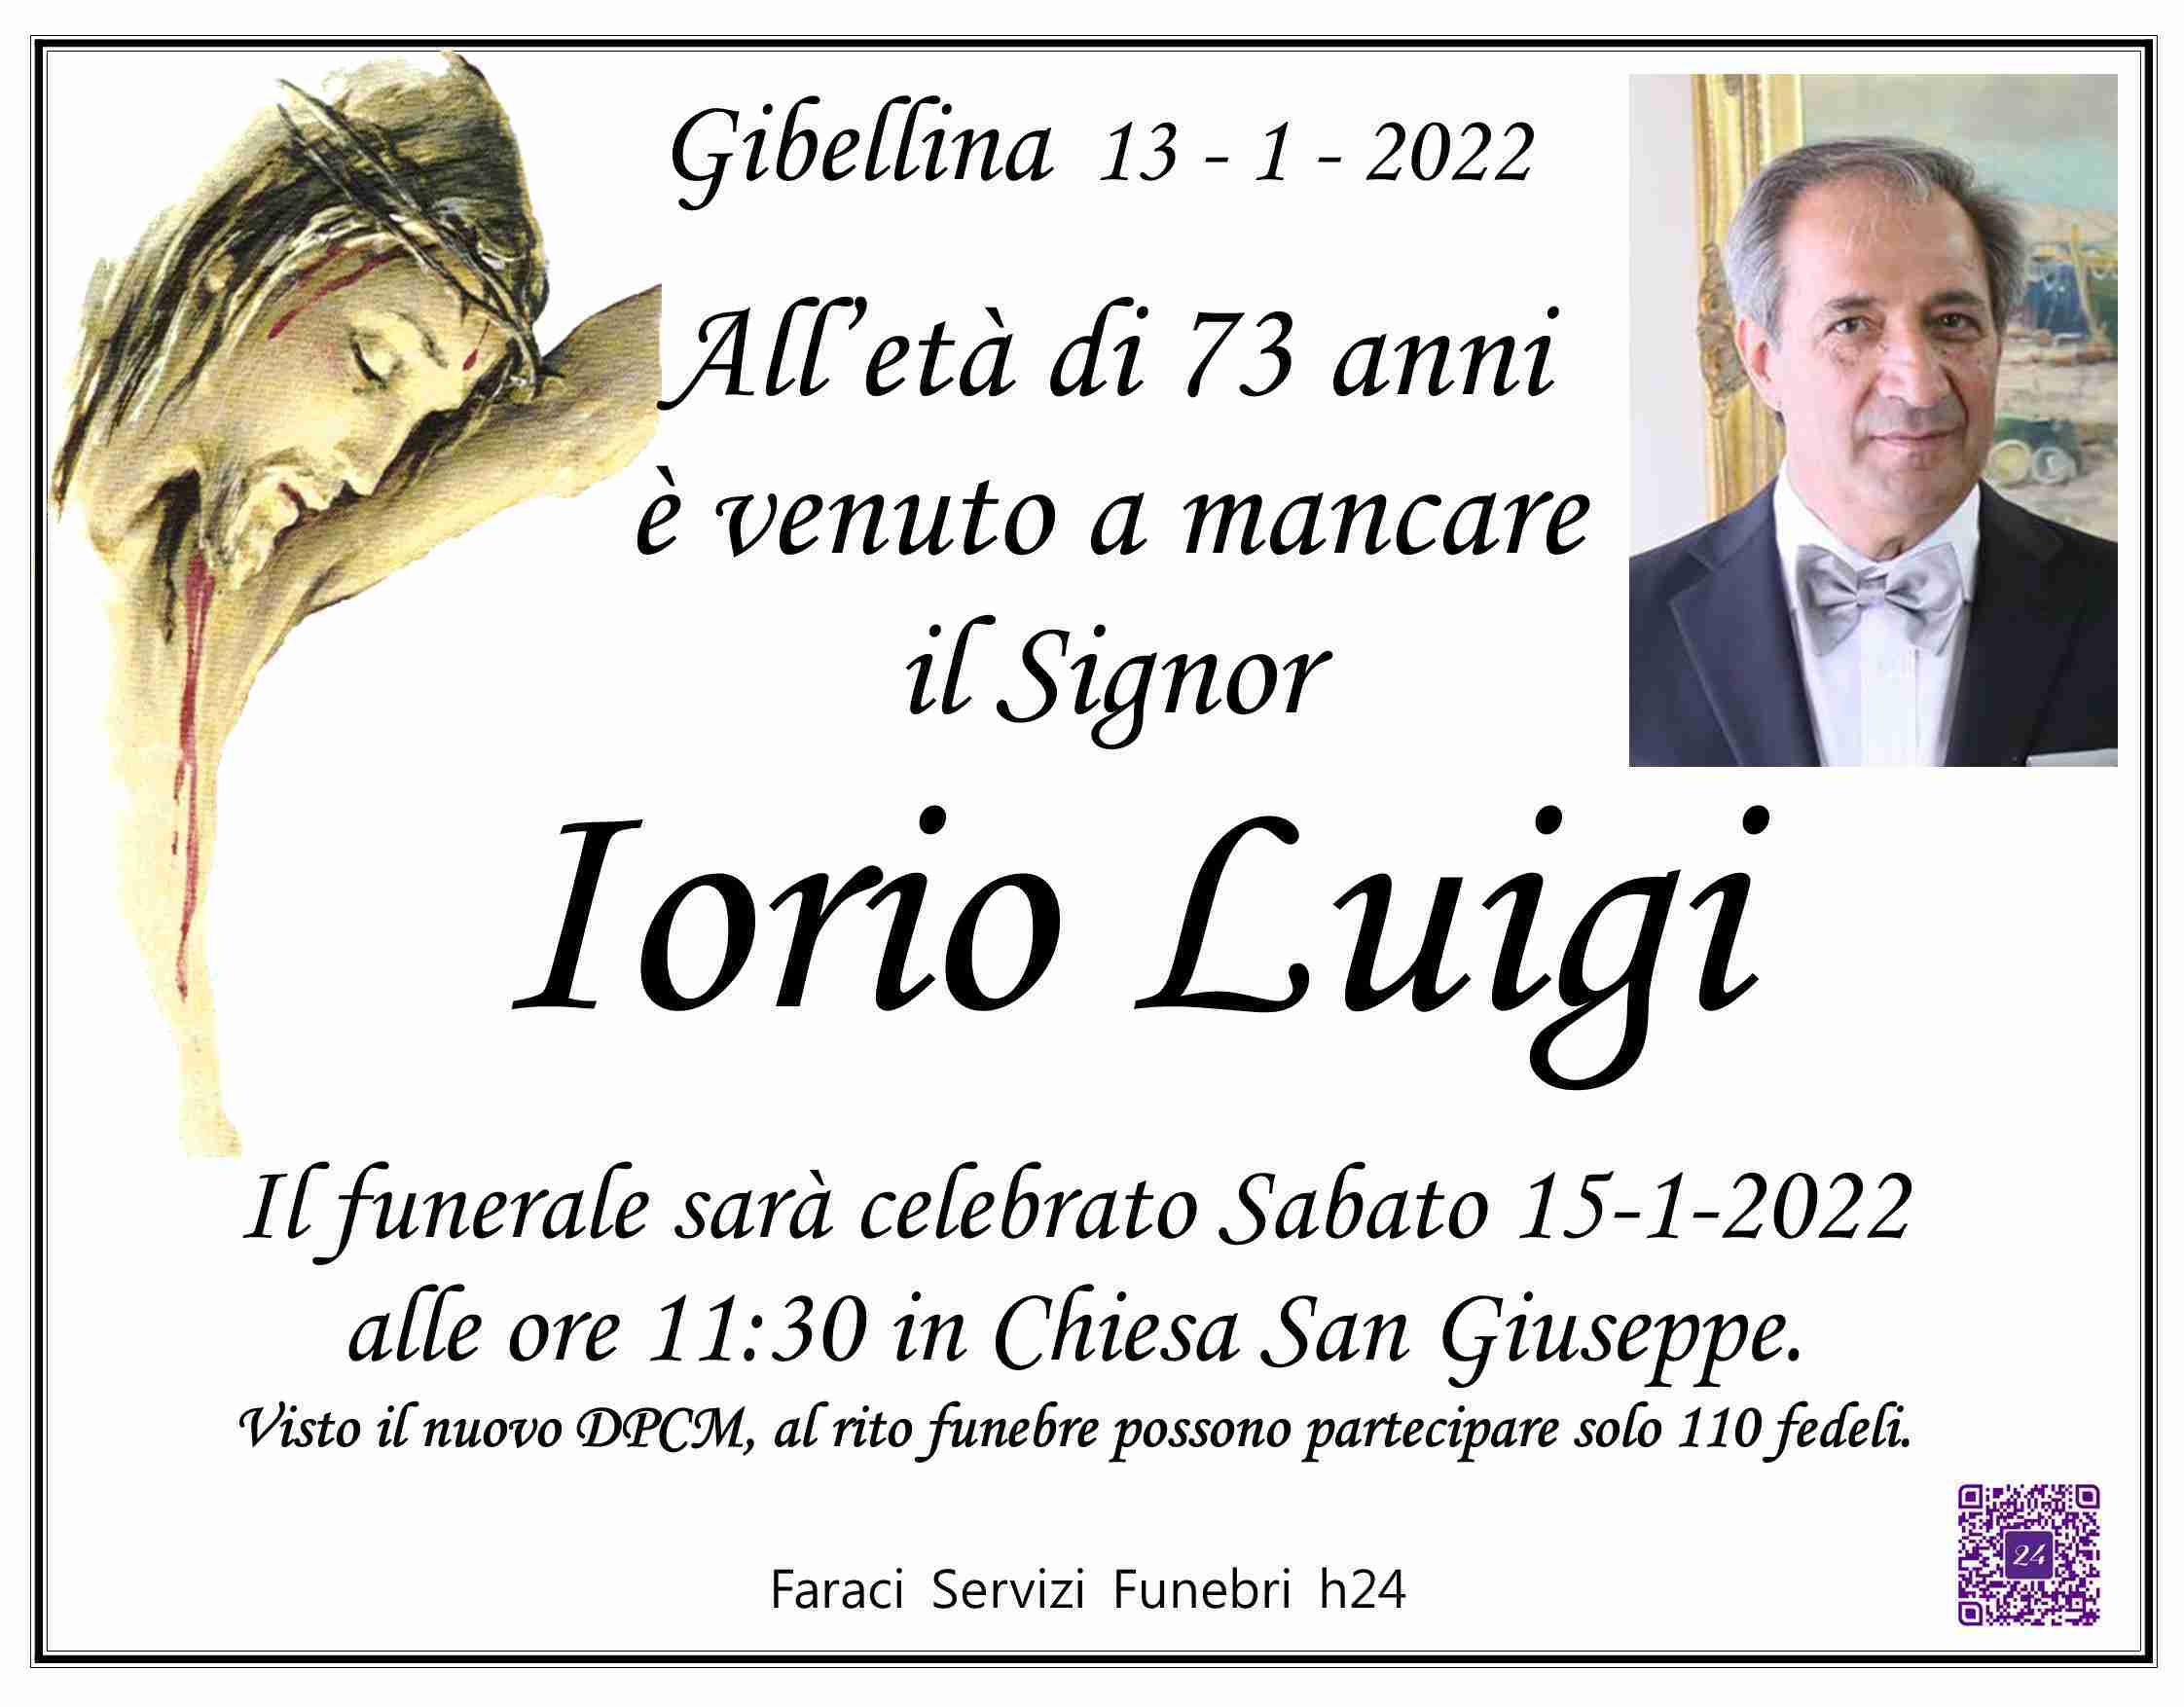 Luigi Iorio